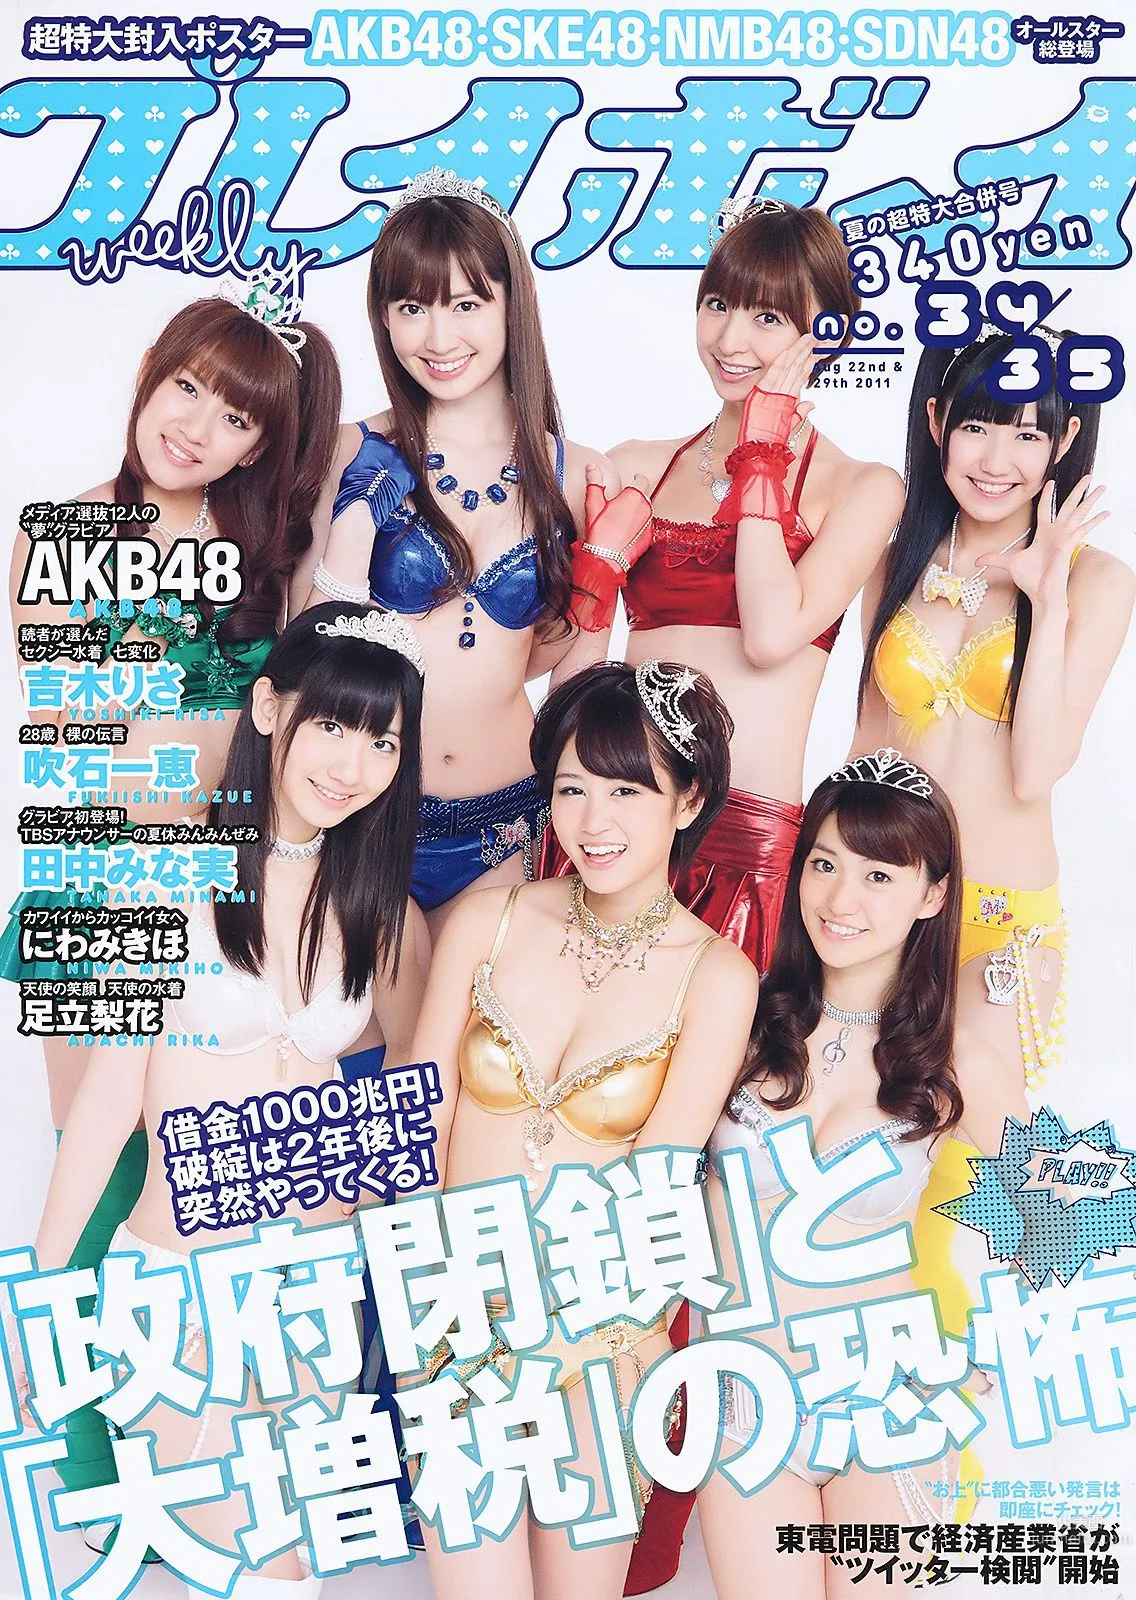 AKB48 にわみきほ 足立梨花 田中みな実 吹石一恵 吉木りさ [Weekly Playboy] 2011年No.34-35 写真杂志1